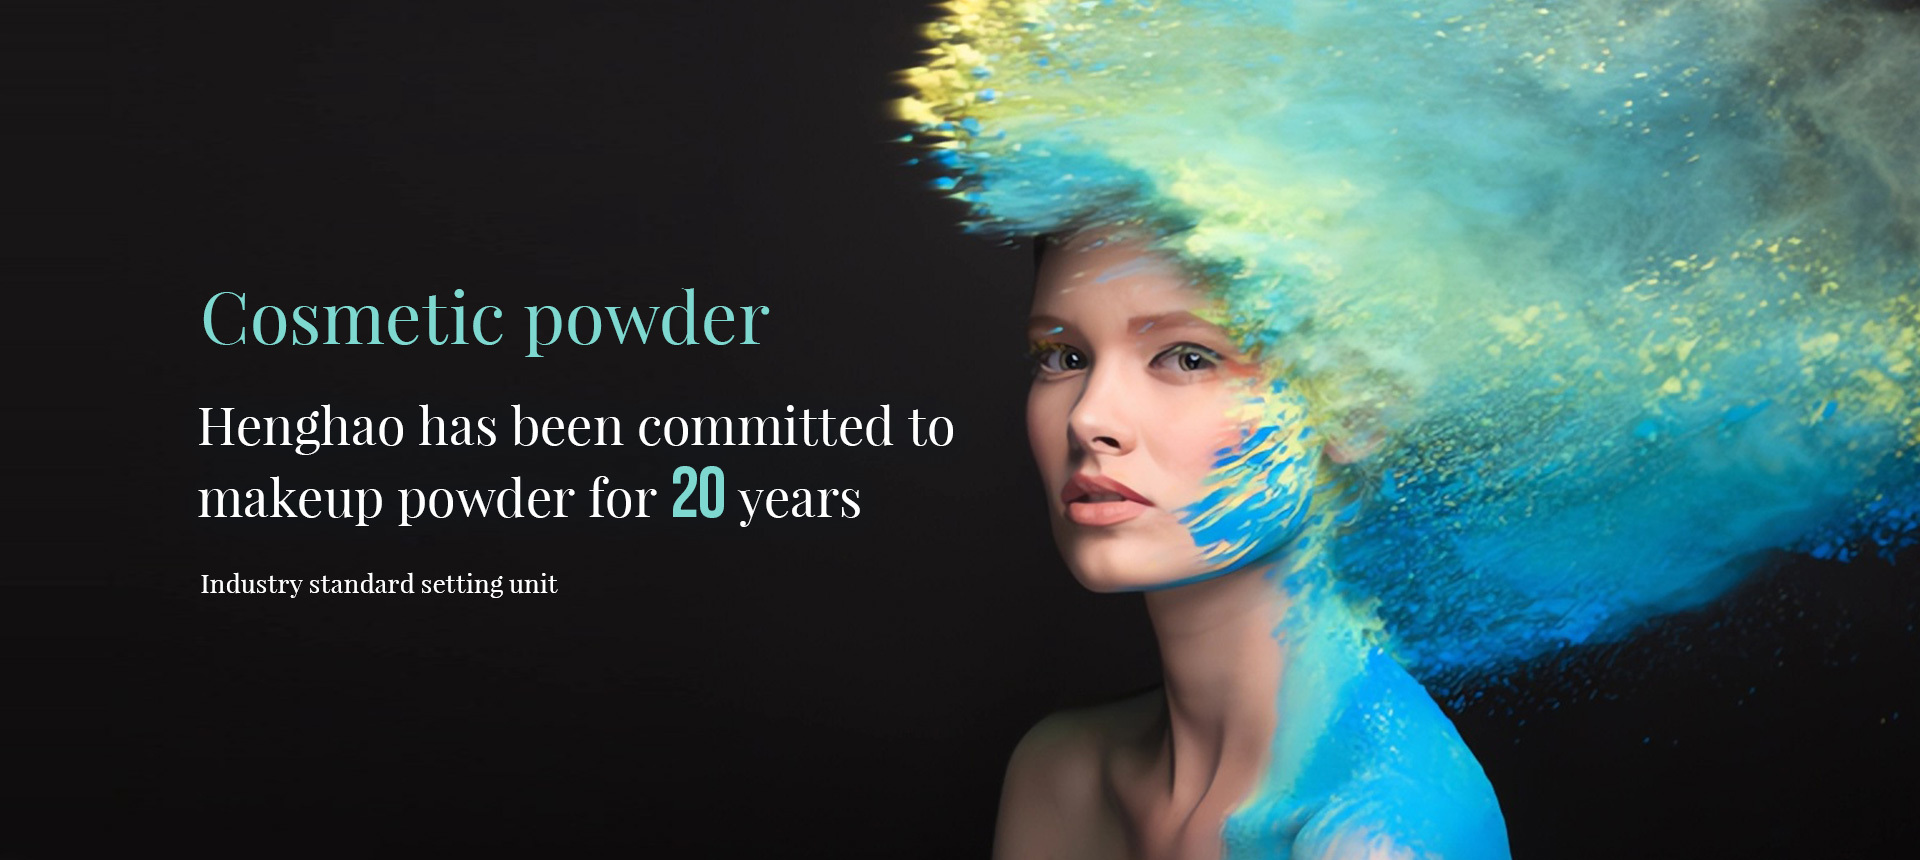 Cosmetic powder